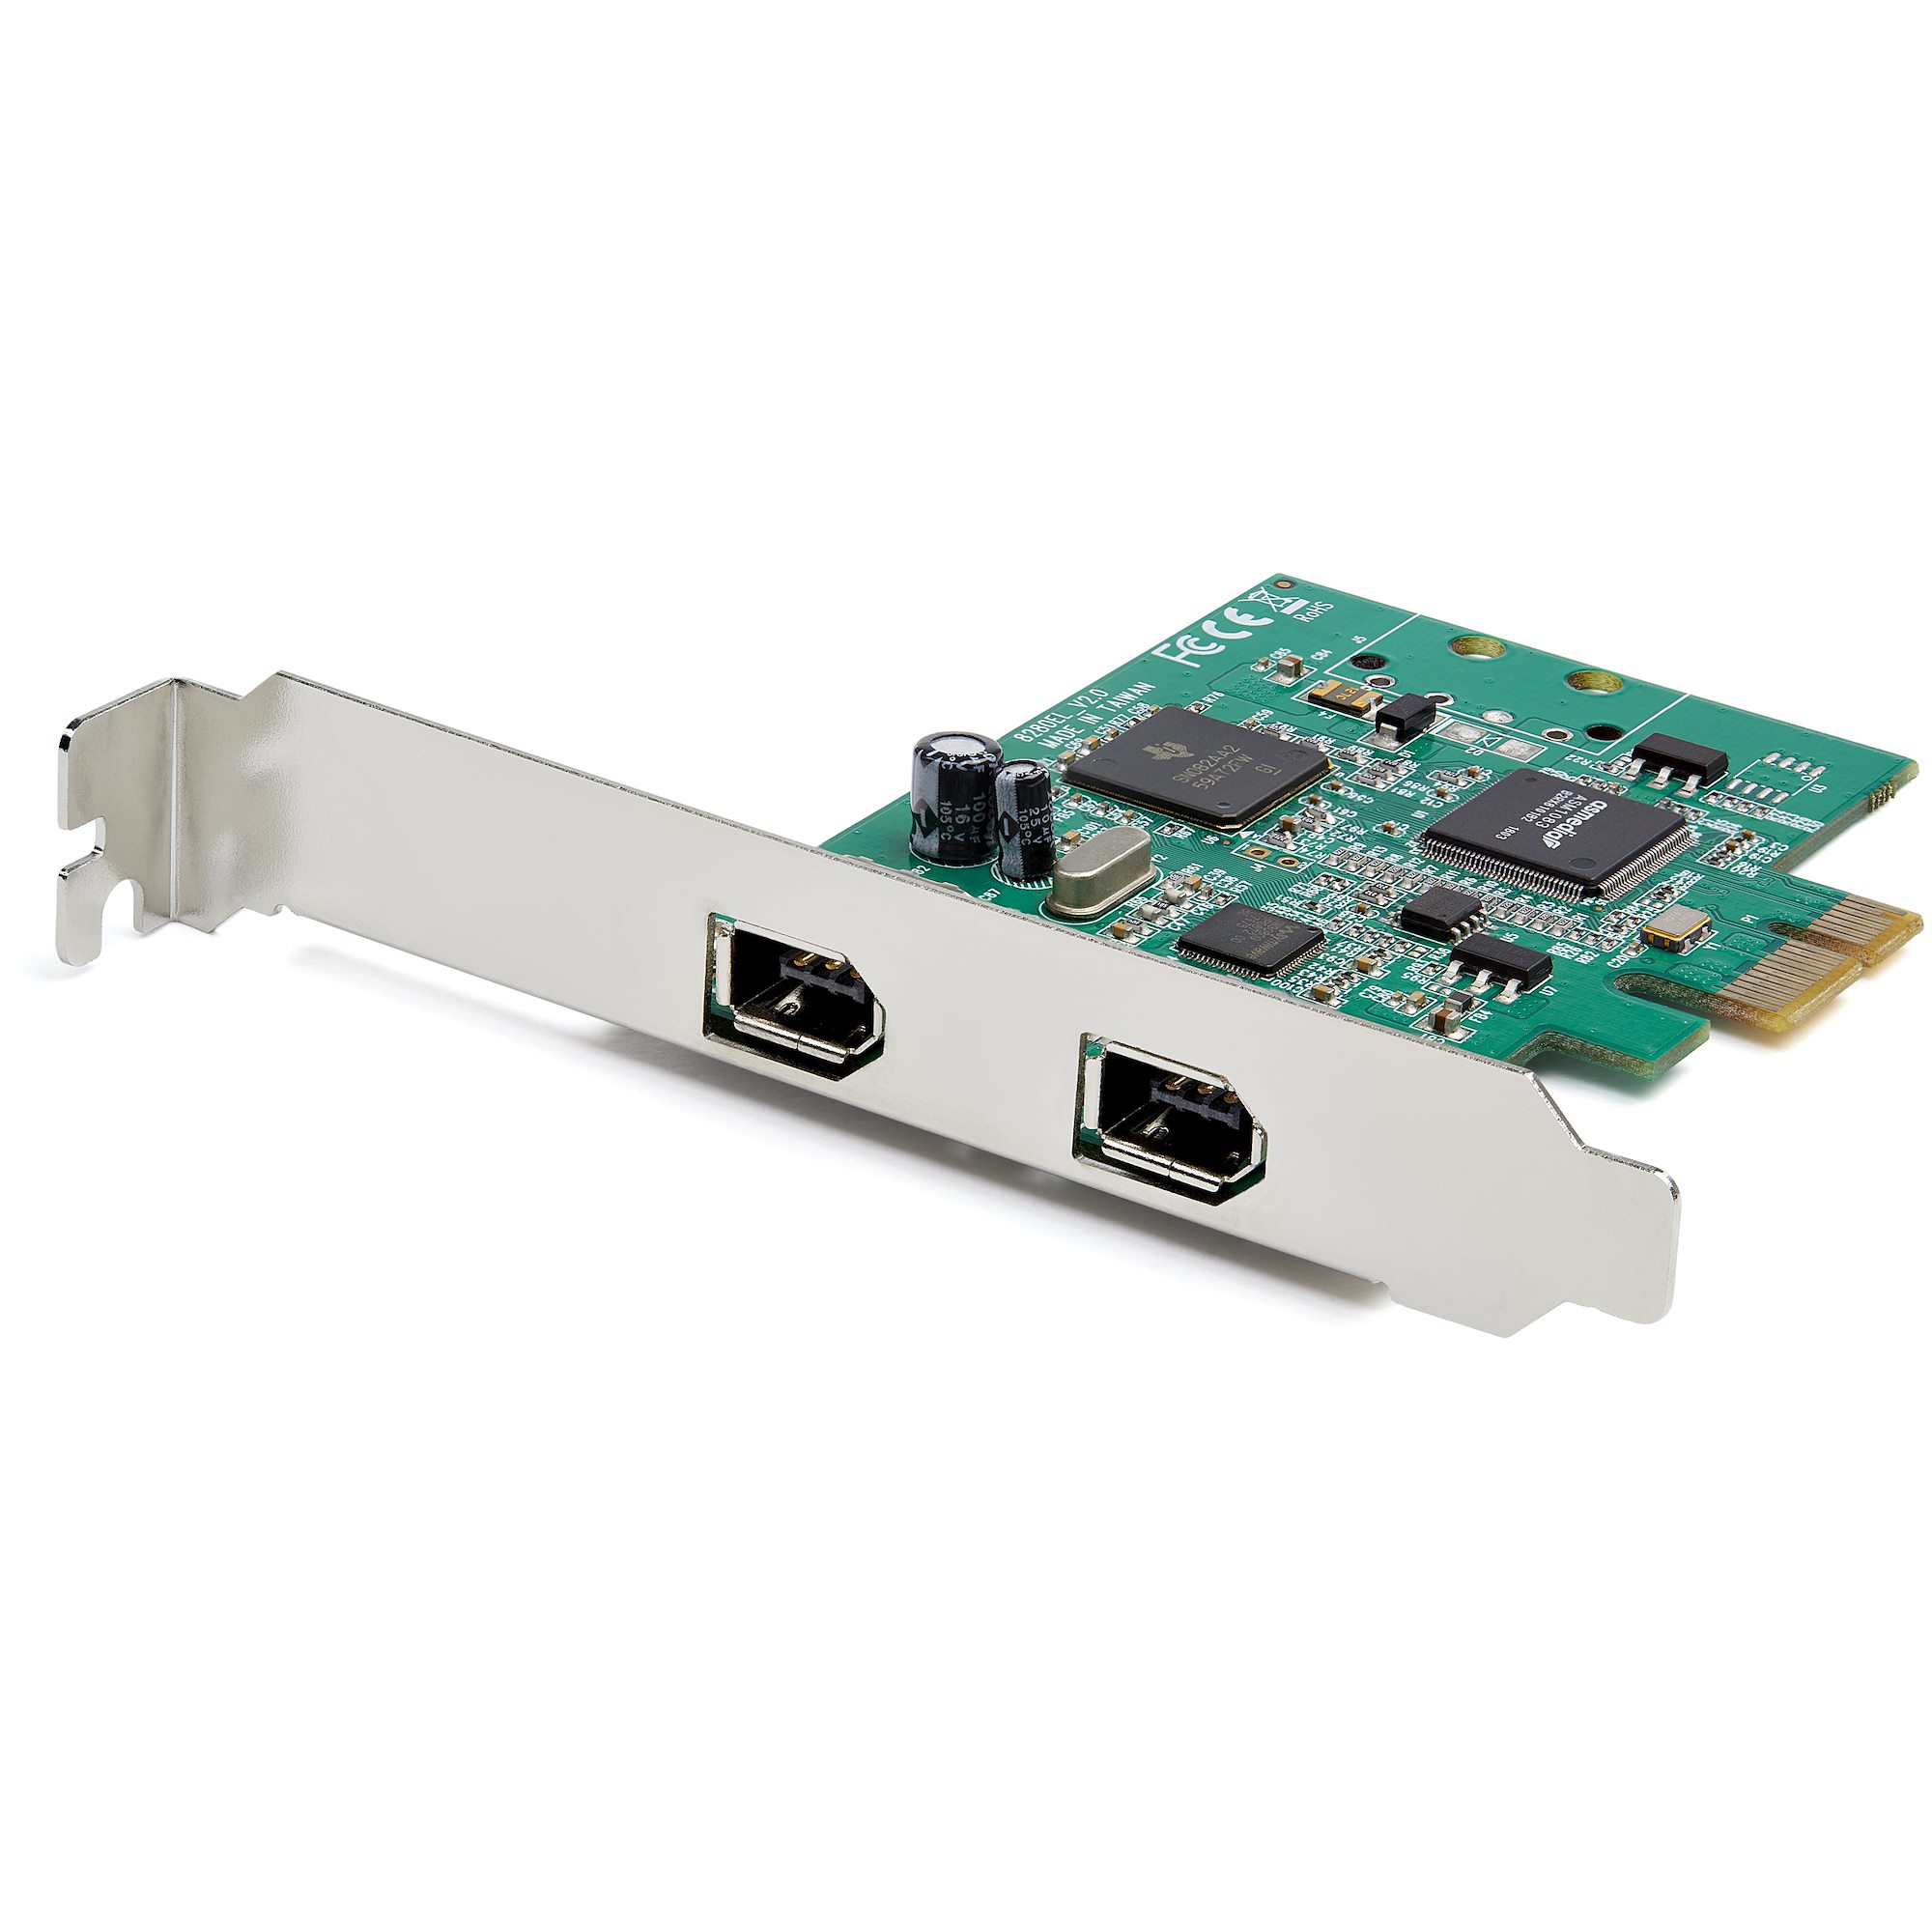 StarTech.com 2 Port 1394a FireWire PCI Express Schnittstellenkarte